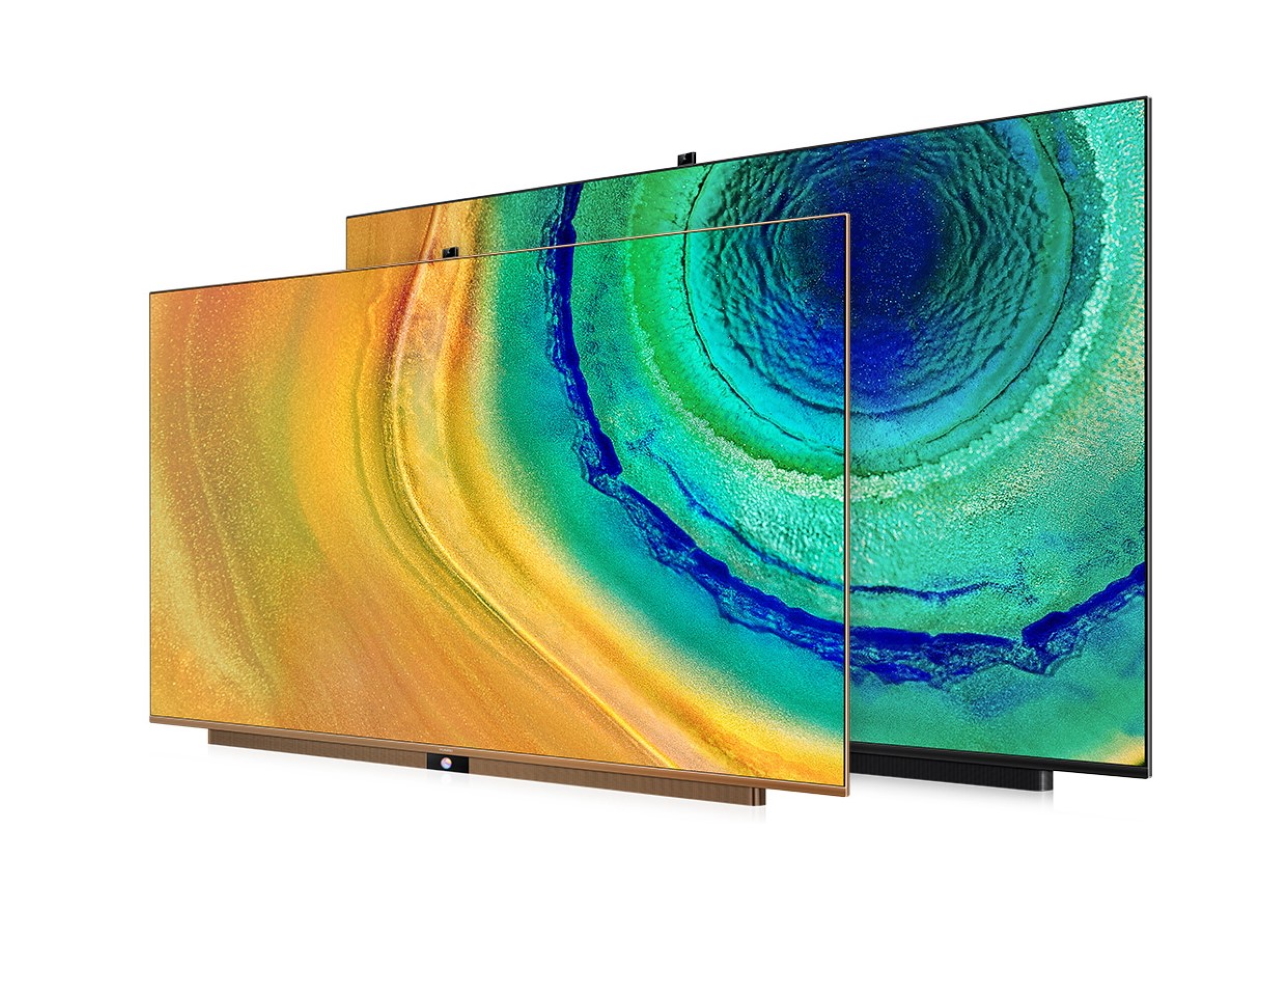 Huawei wprowadził 75-calowy telewizor Smart Vision z ulepszonym ekranem 4K QLED, systemem operacyjnym Harmony i ceną 1848 USD